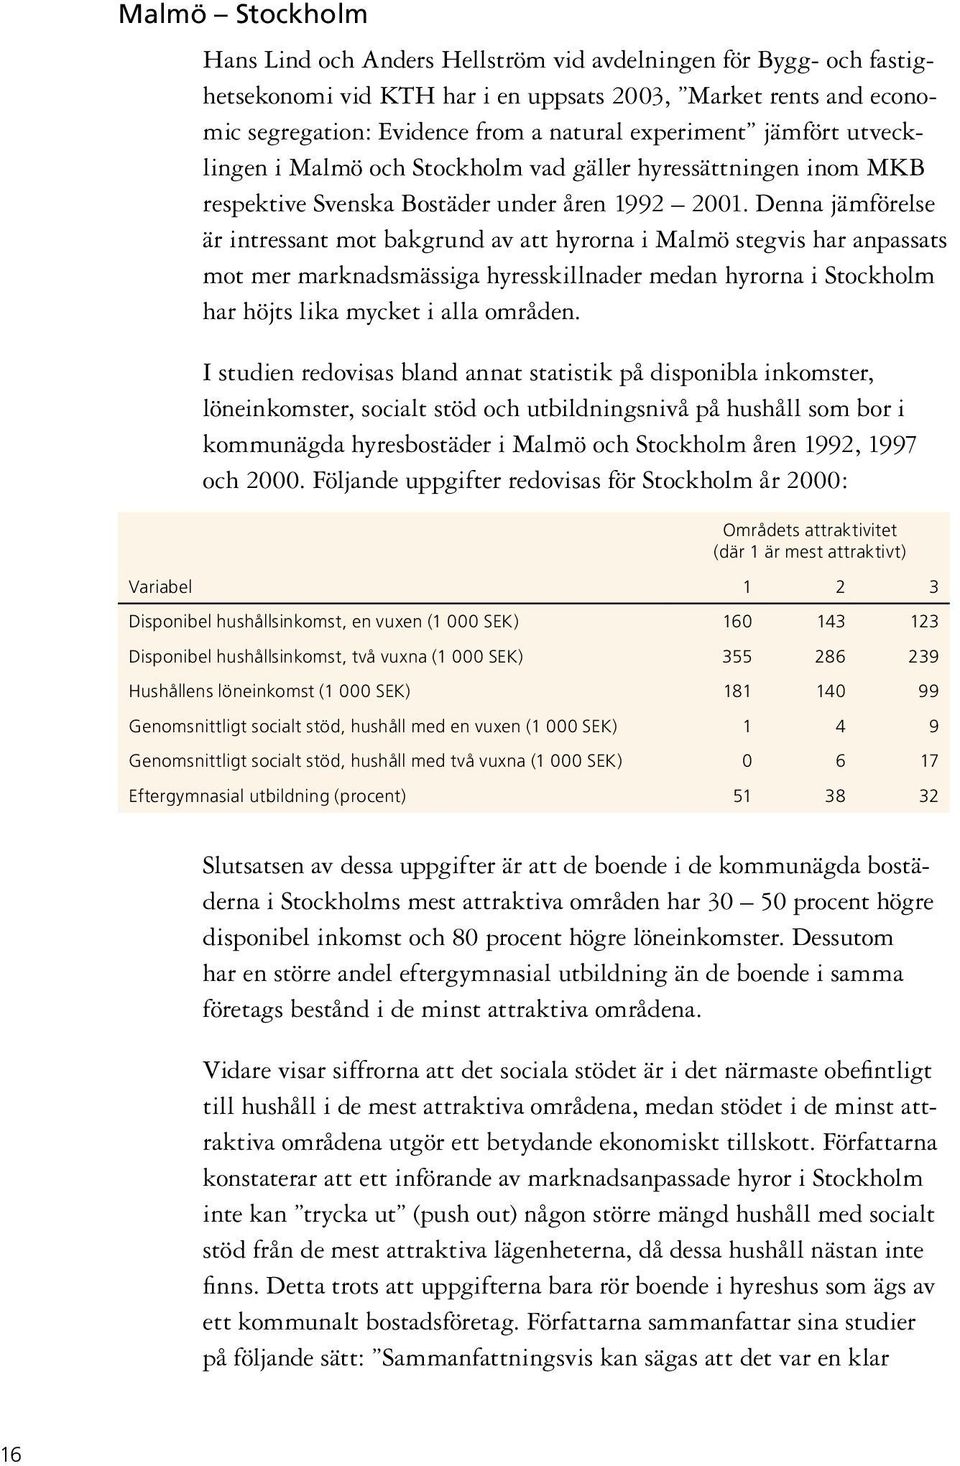 Denna jämförelse är intressant mot bakgrund av att hyrorna i Malmö stegvis har anpassats mot mer marknadsmässiga hyresskillnader medan hyrorna i Stockholm har höjts lika mycket i alla områden.